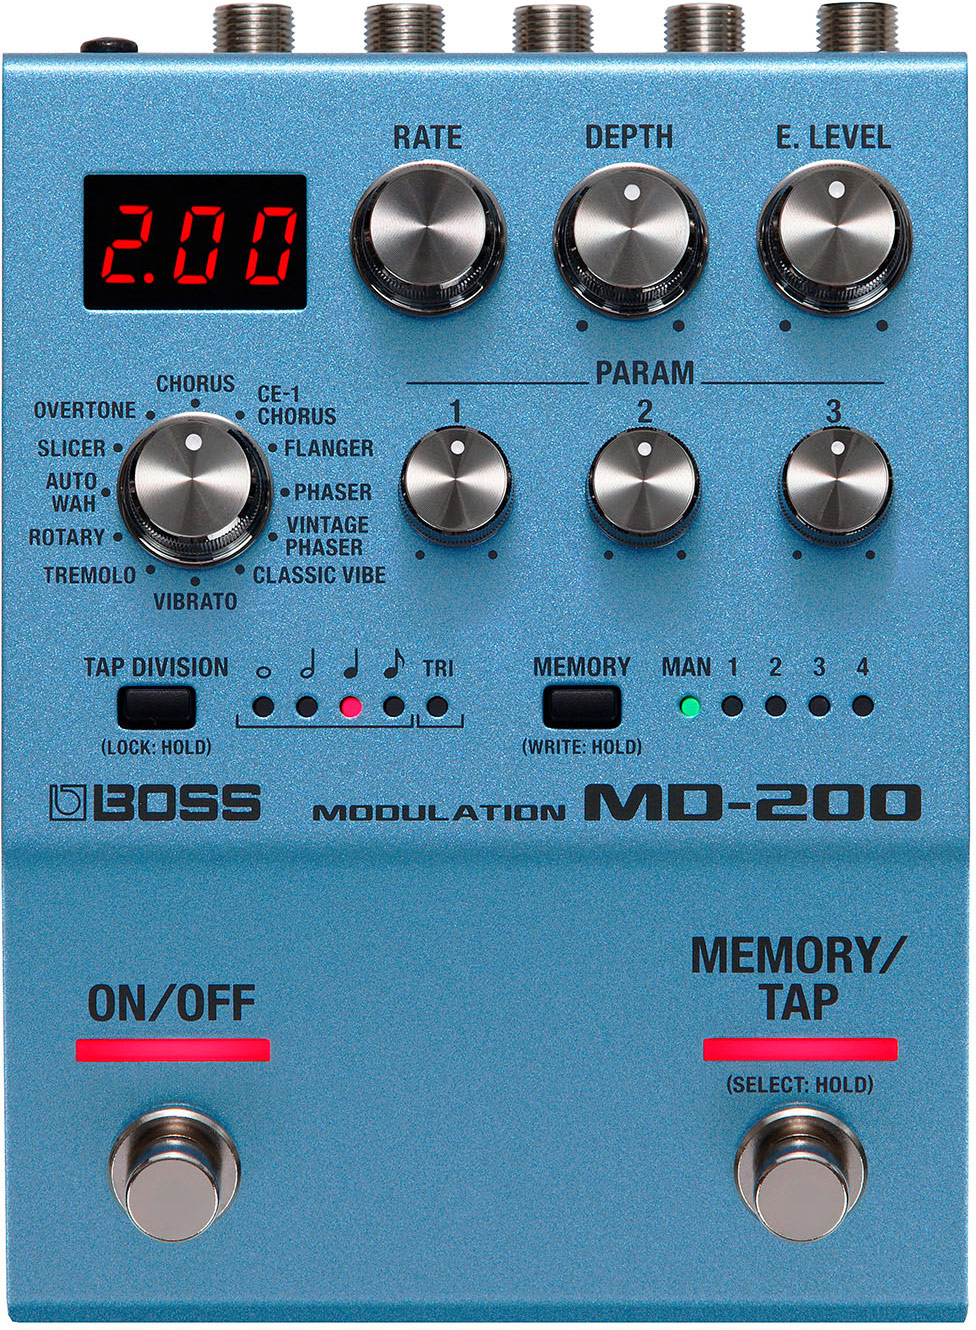 BOSS MD-200 Modulation Multi FX guitarguitar